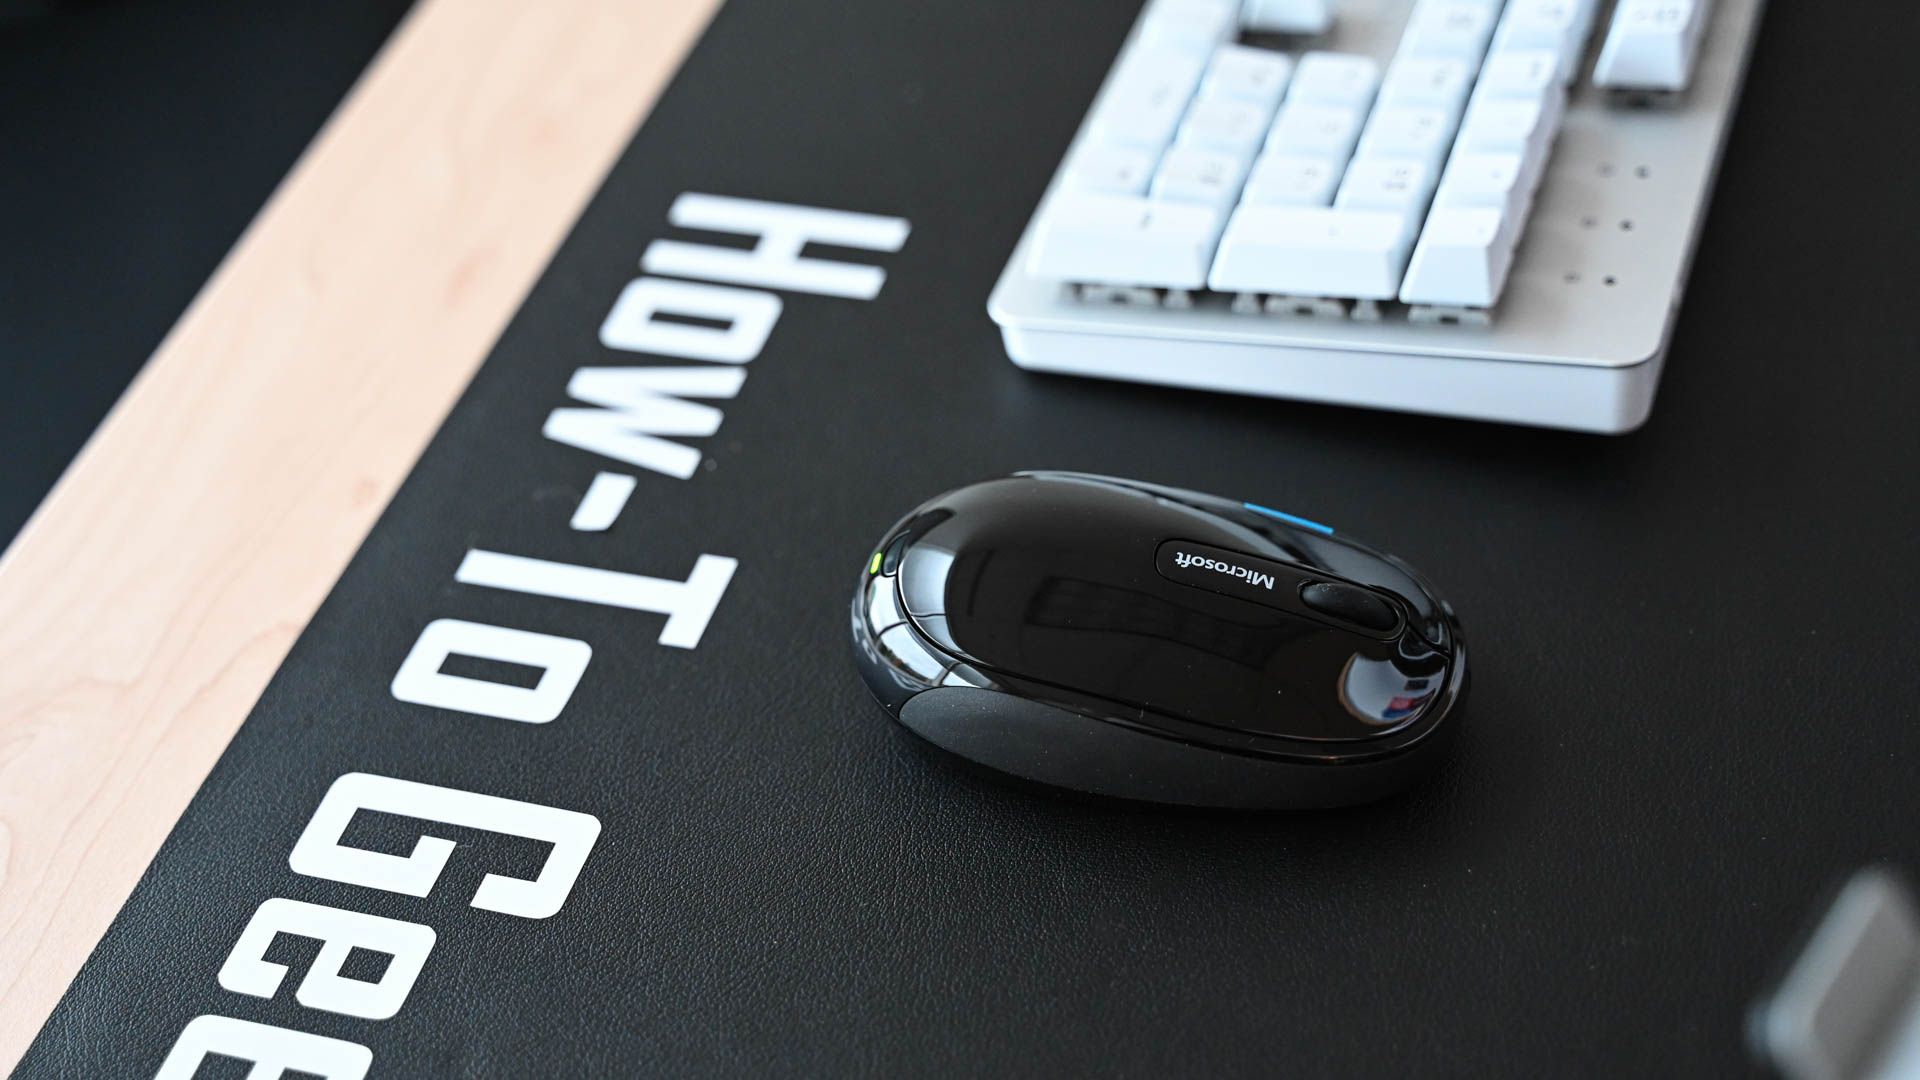 Microsoft Sculpt Comfort Mouse Review: Don't Fix What's Not Broken